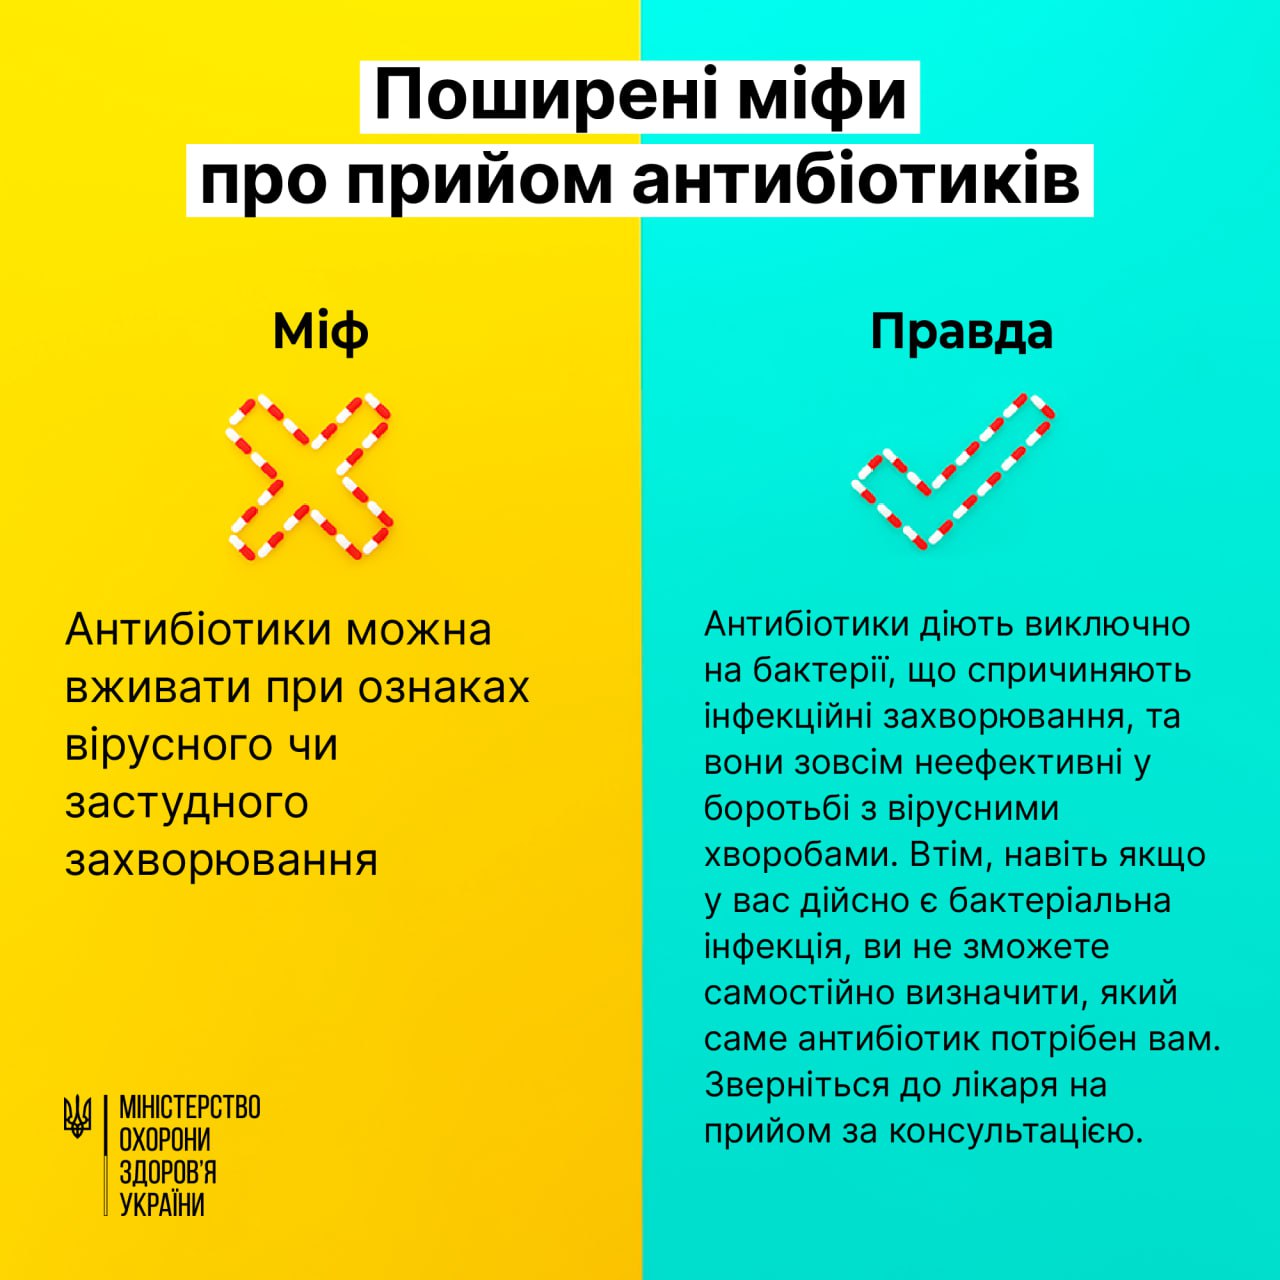 64% українців вважають, що від ГРВІ можна вилікуватися антибіотиками — МОЗ